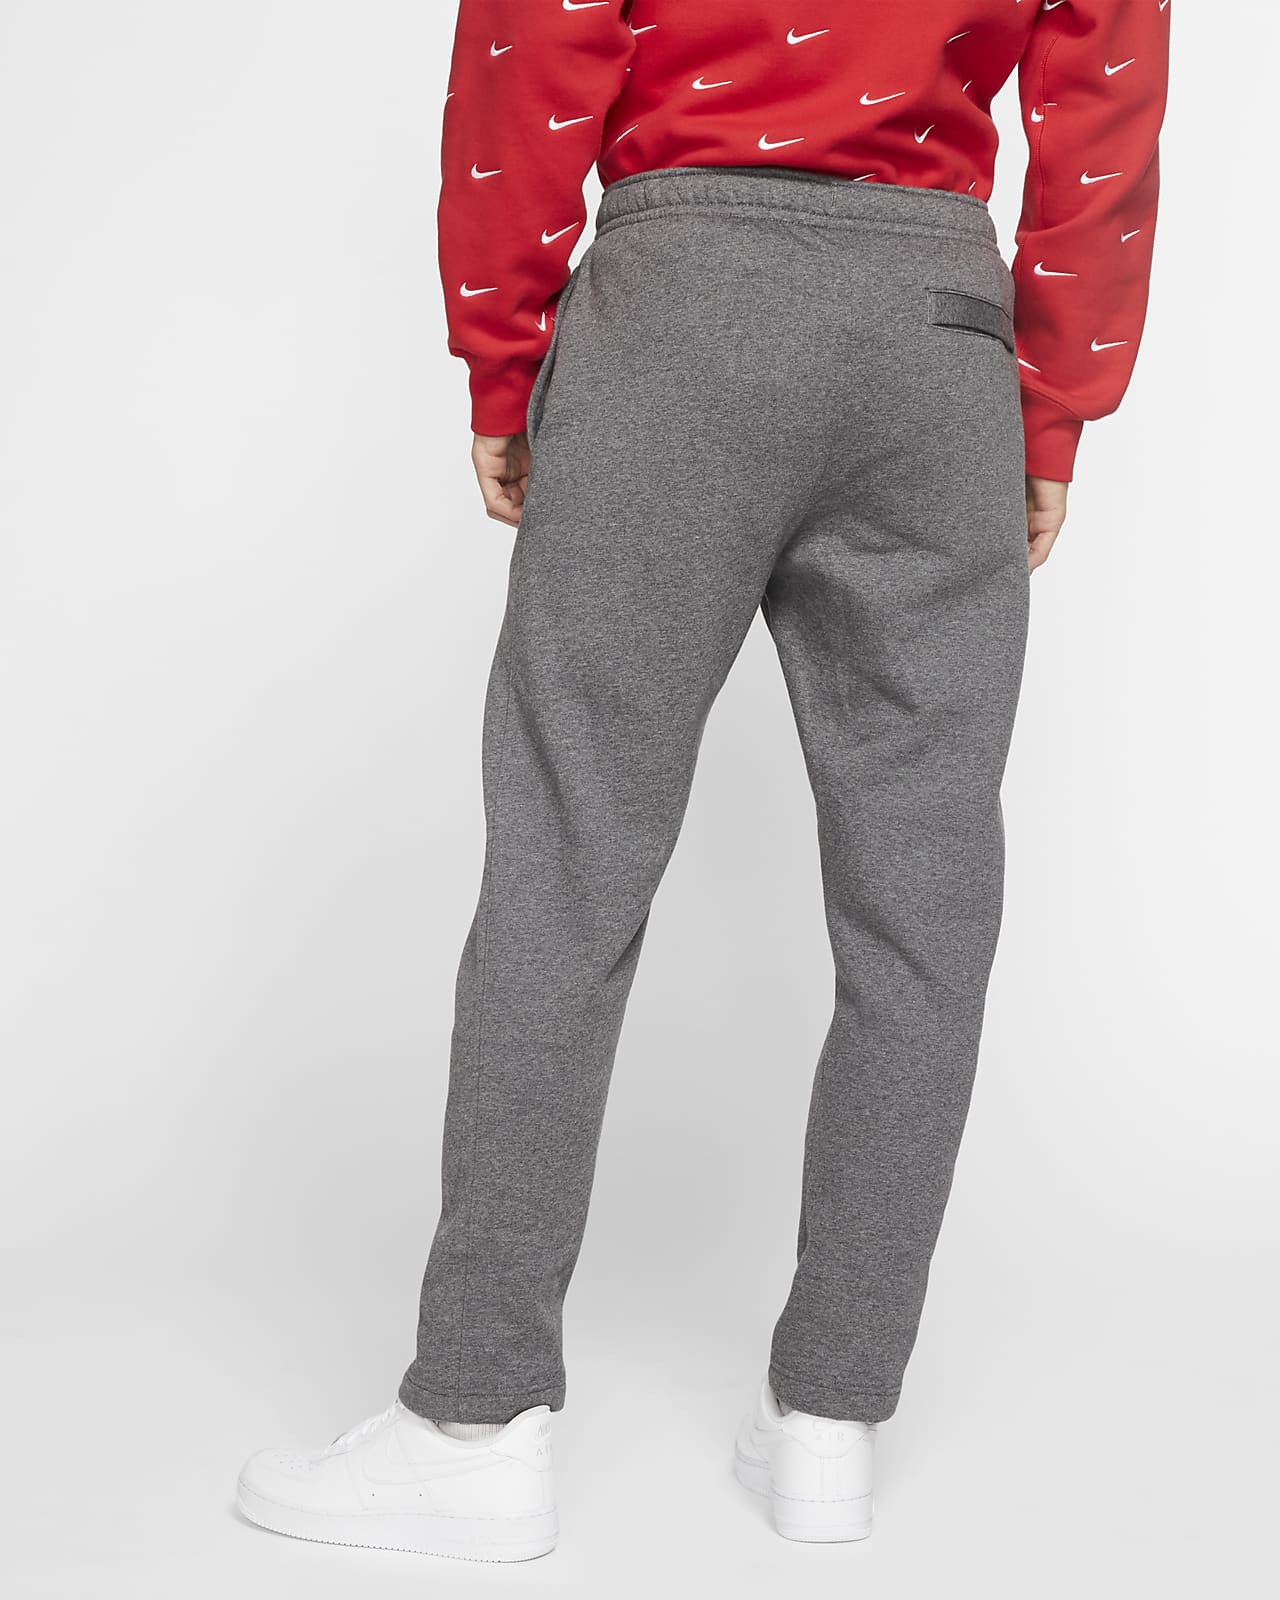 Pantalones para hombre Club Fleece. Nike.com